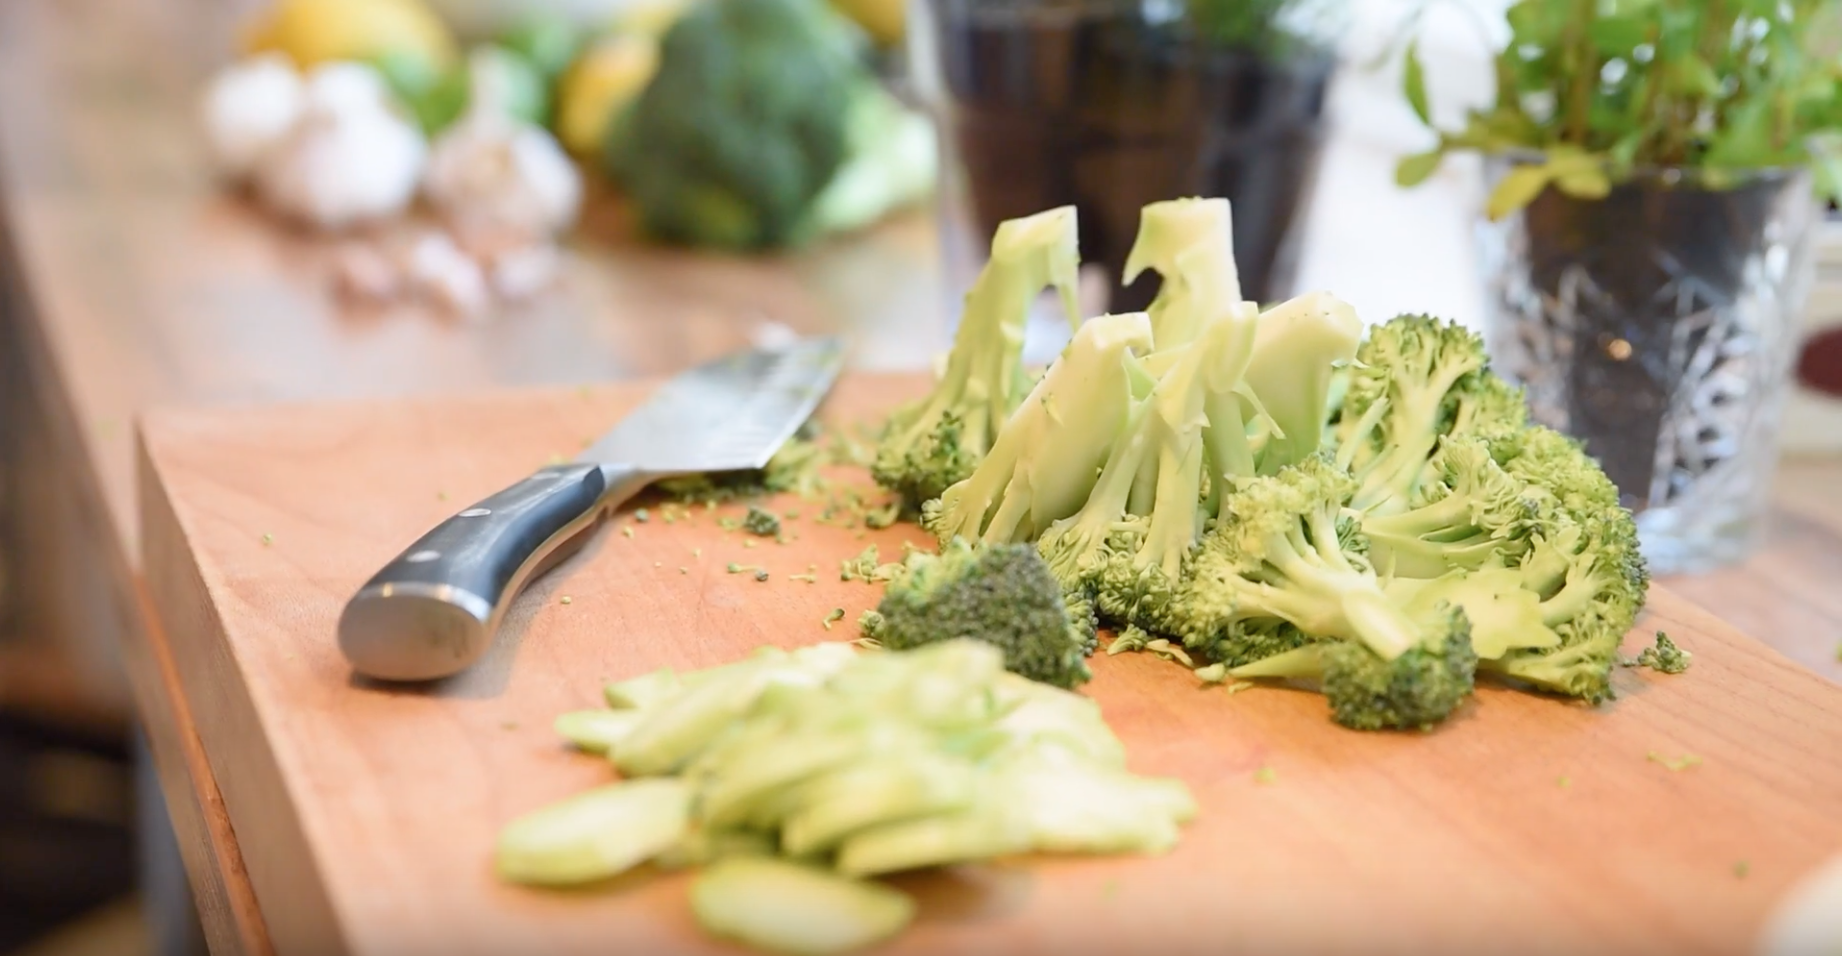 Använd hela broccolin: Broccolistjälken är till för att ätas!